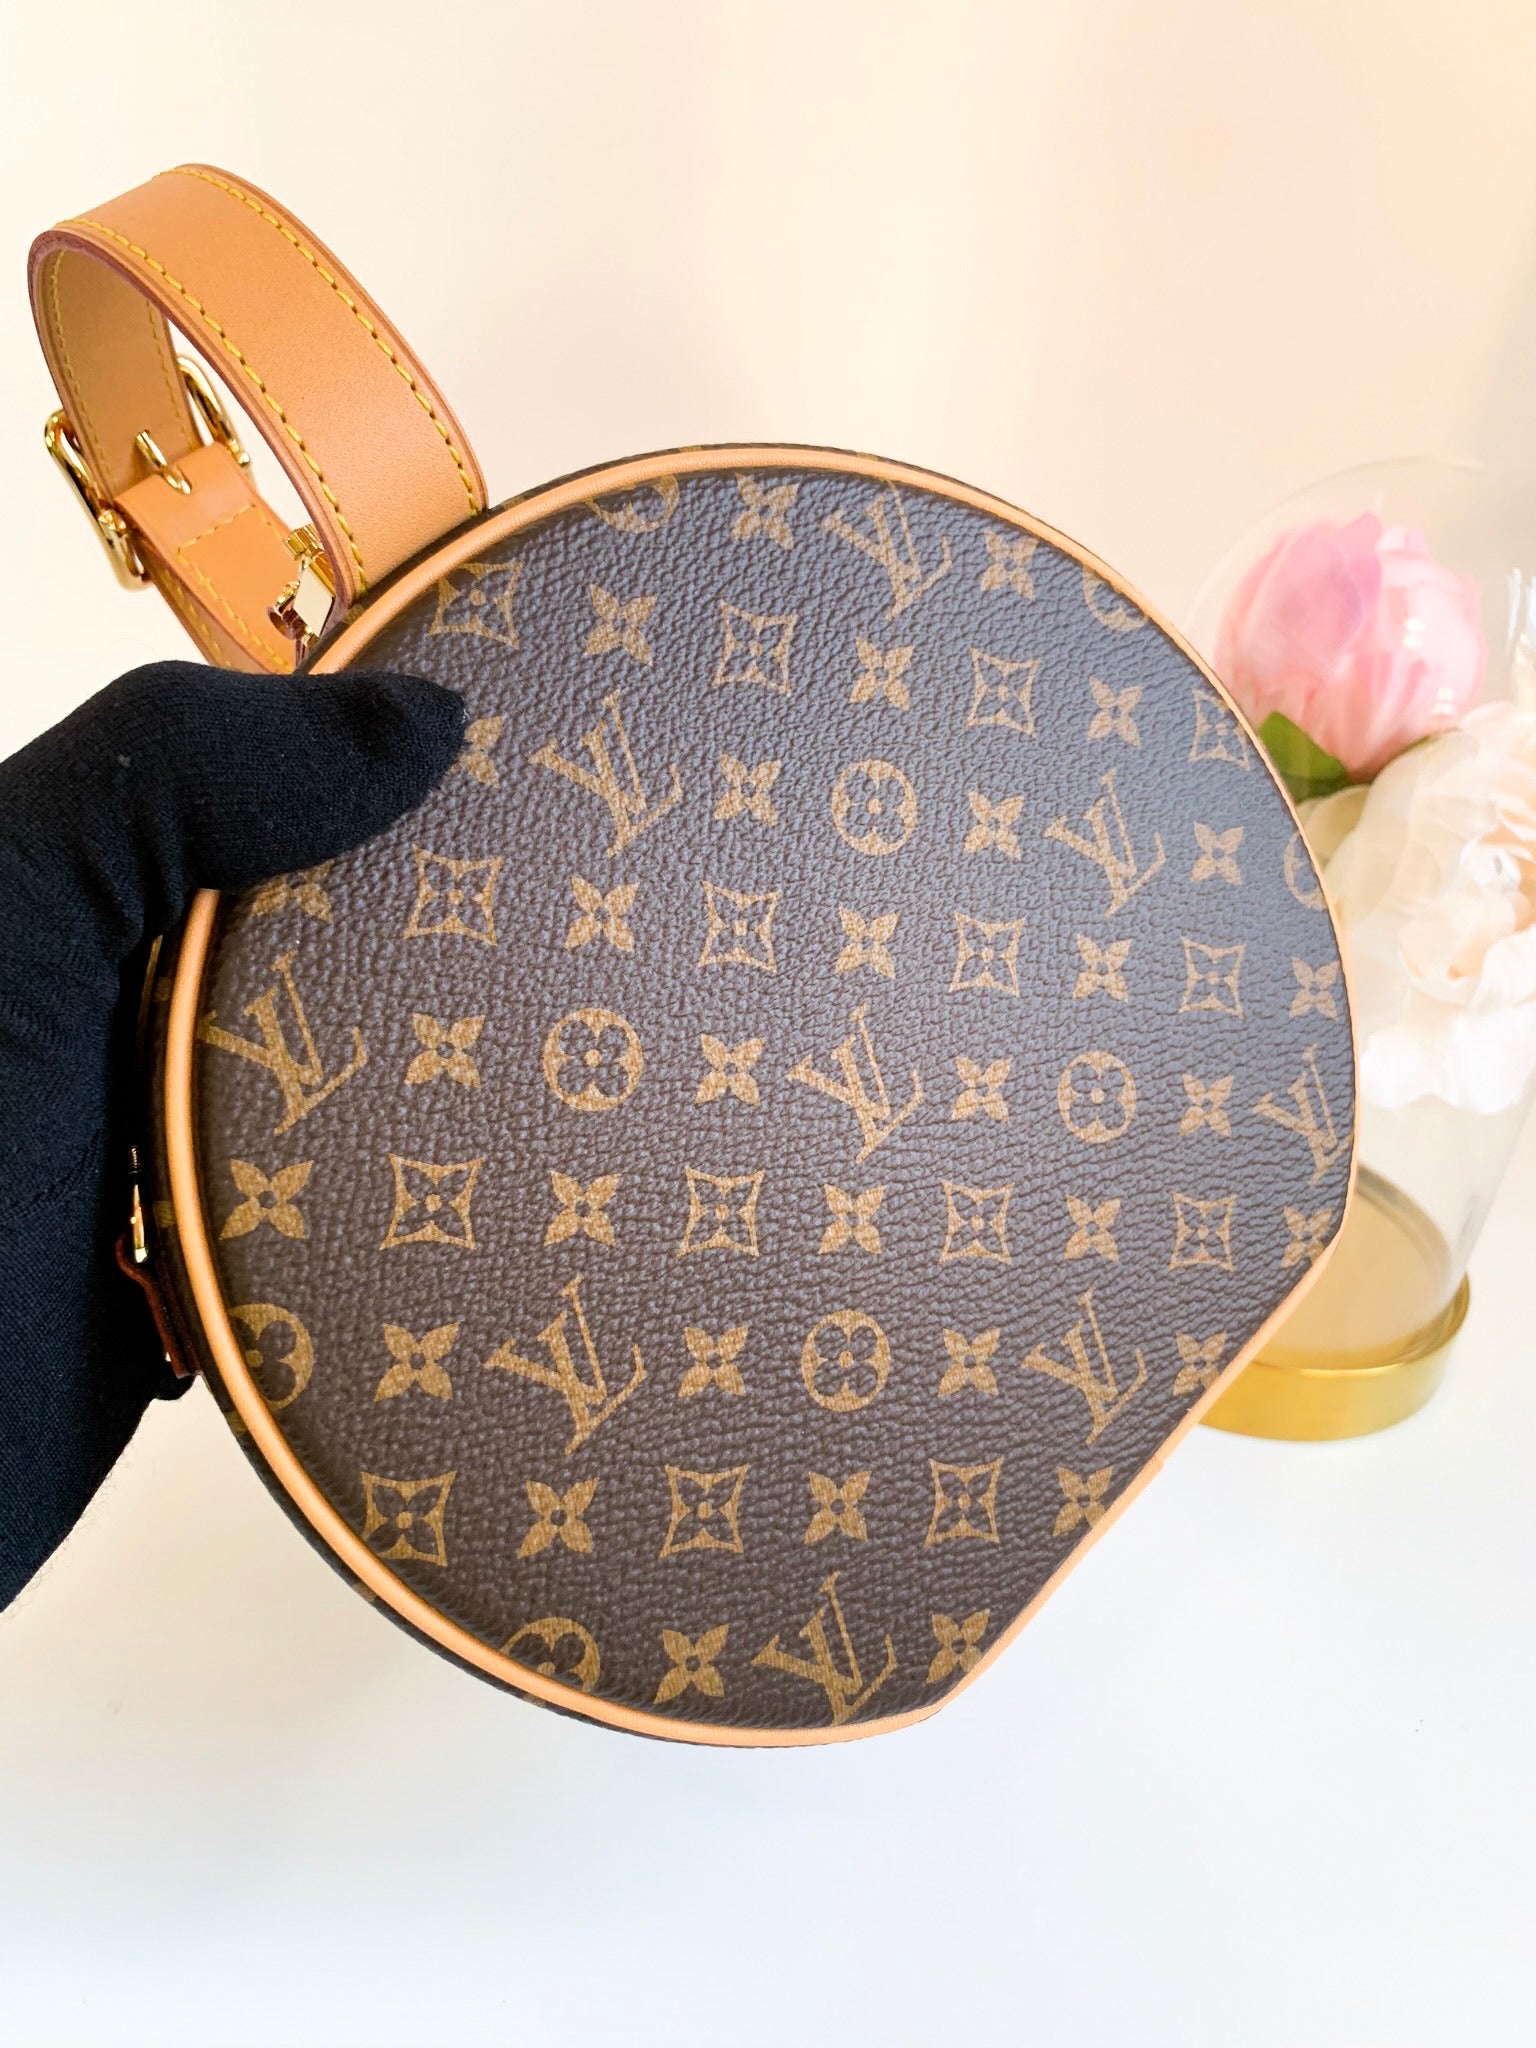 Freebies & Deals - AUTH NEW Louis Vuitton PETITE BOITE CHAPEAU Hat Box bag,  W/LV GIFT BOX, DUSTBAG!  #100authentic # louisvuitton